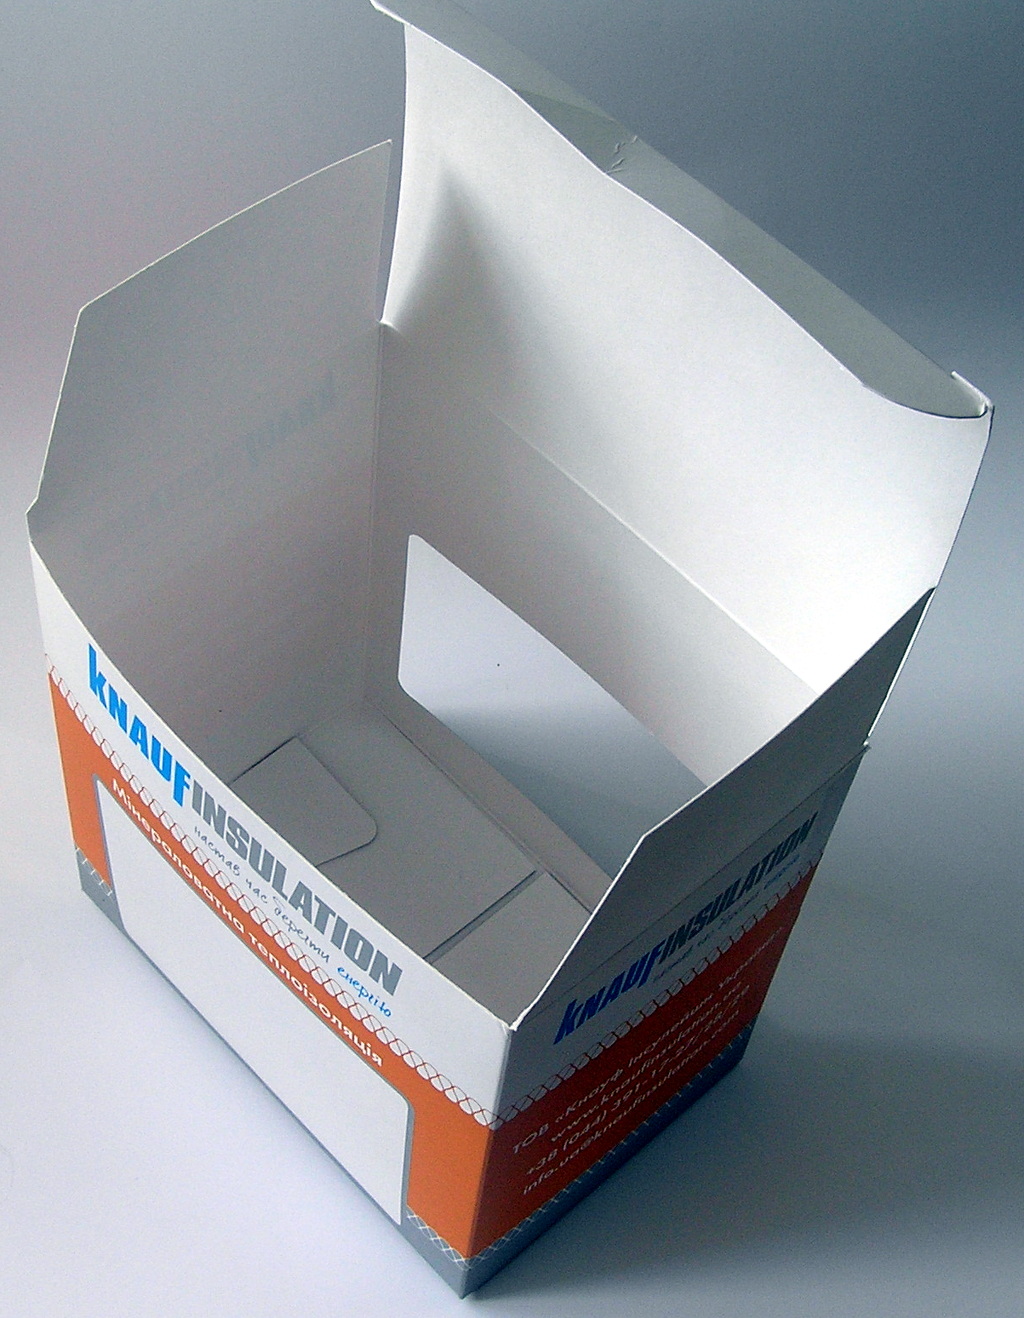 Печать упаковки «Knauf Insulation». Полиграфия типографии Макрос, изготовление упаковки, спецификация 971988-3